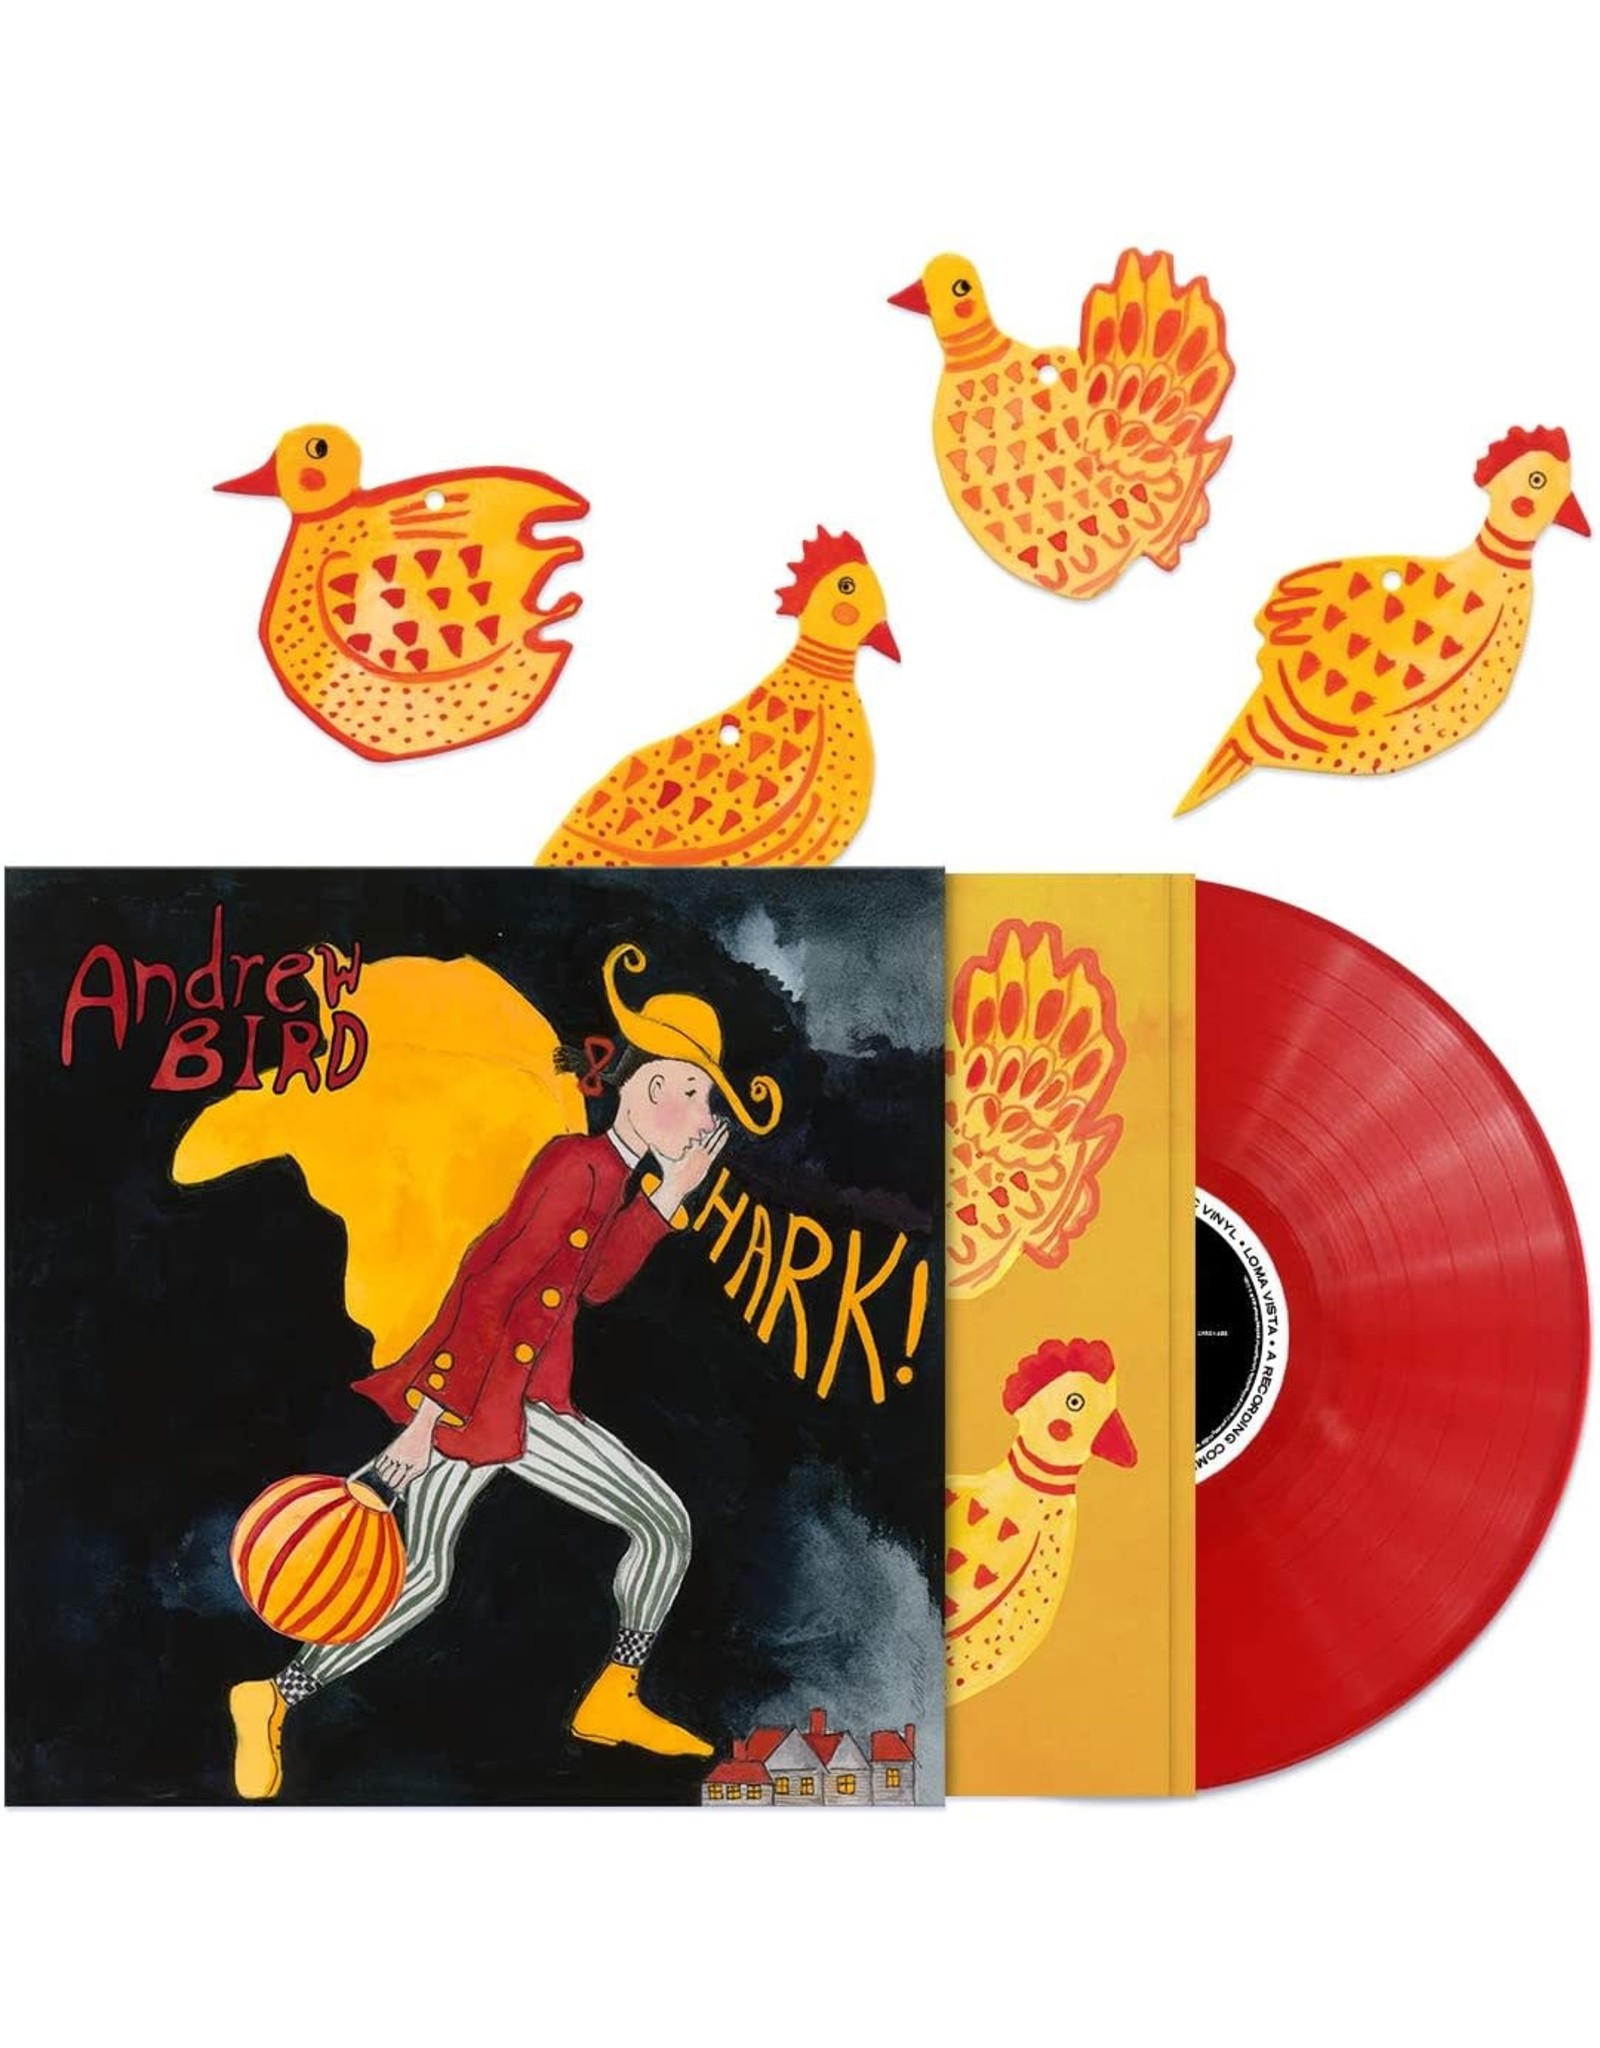 Andrew Bird - Hark! (Red Vinyl)